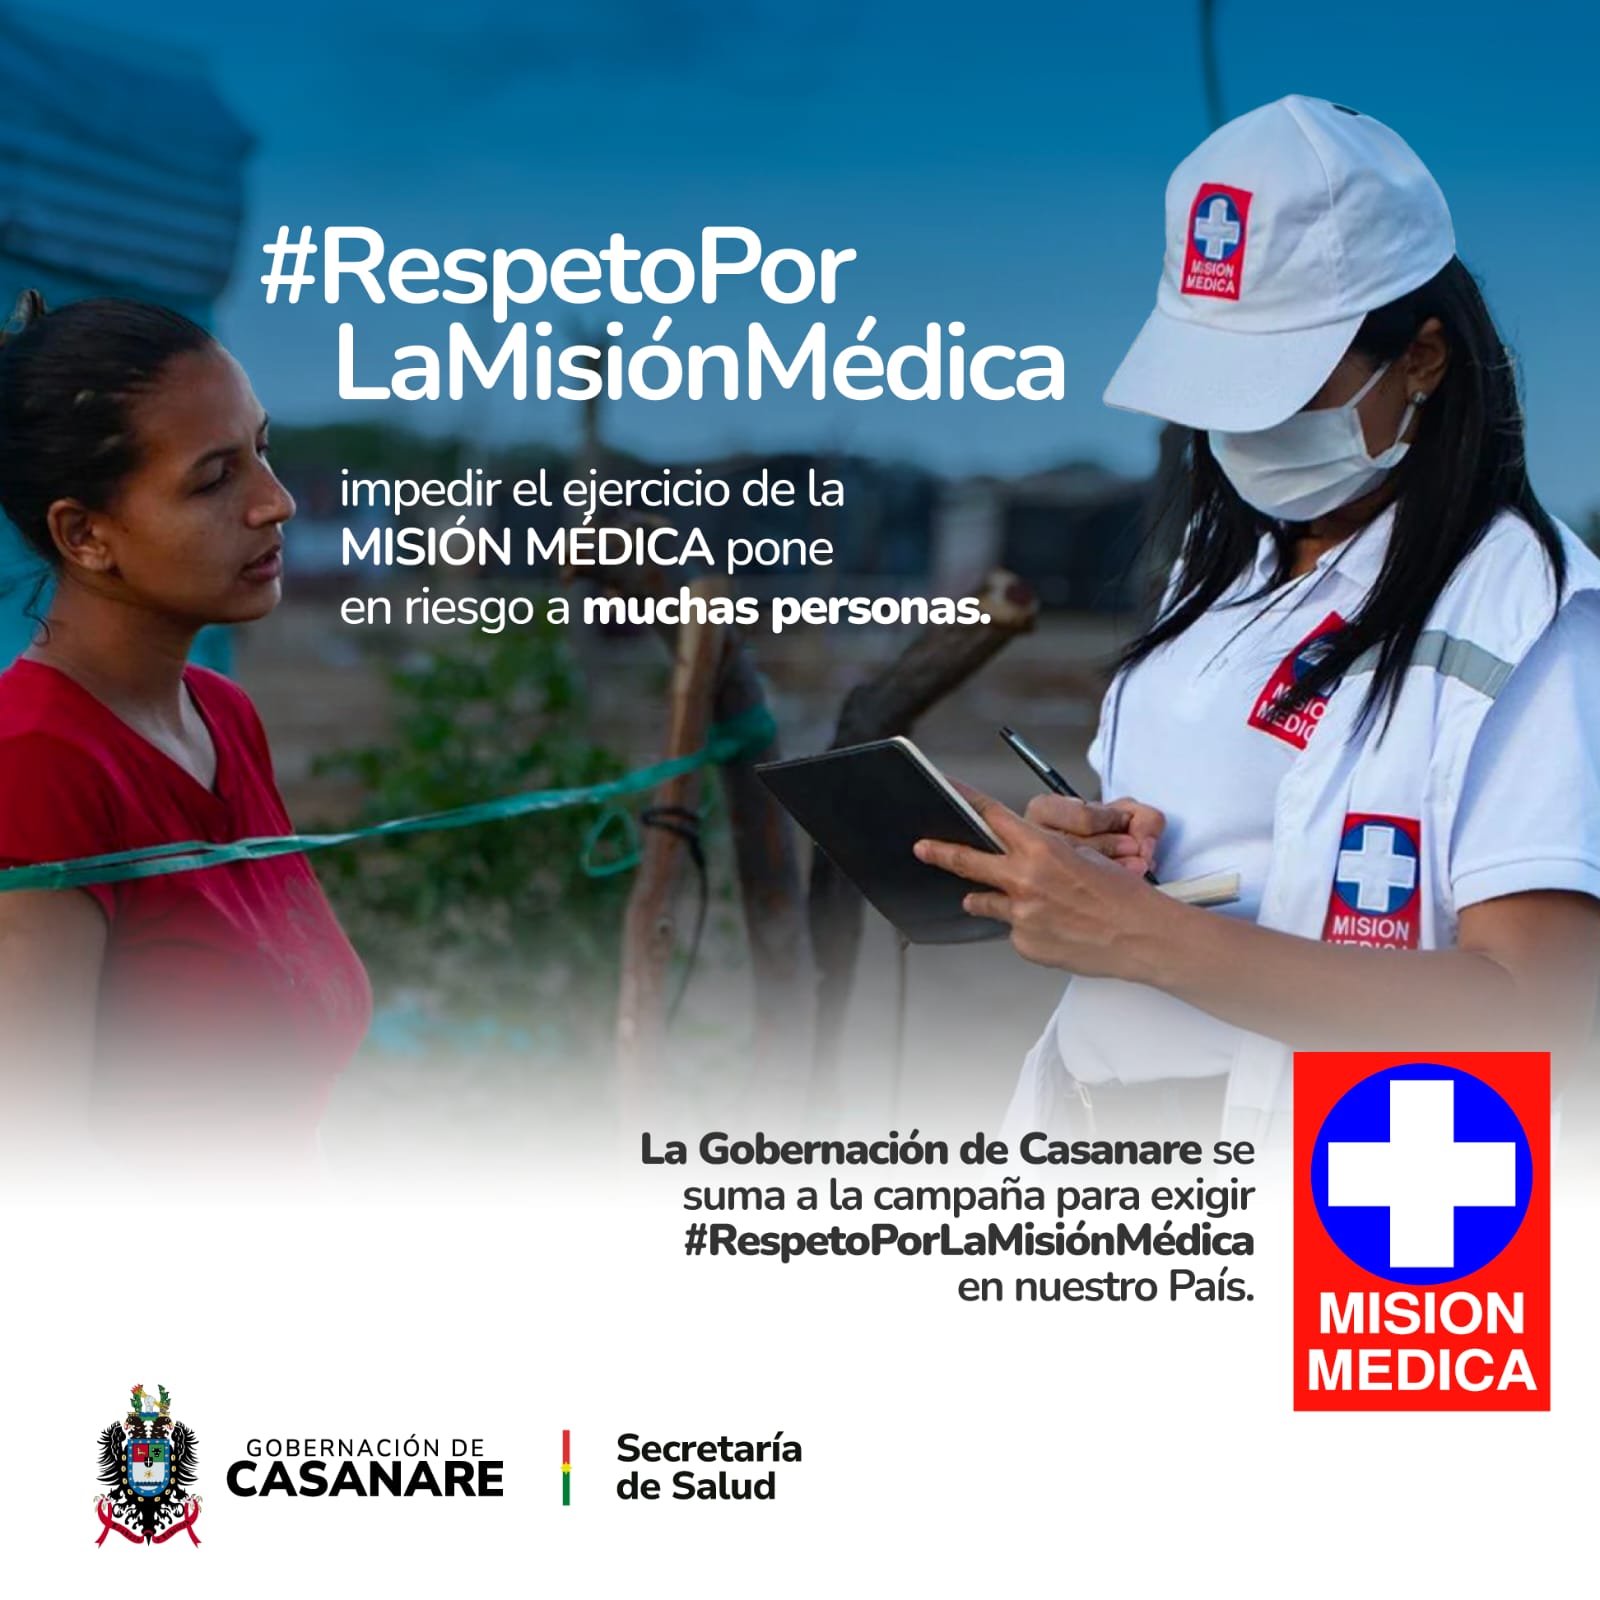 Salud/ Fortalecimiento del clúster de la salud en Casanare: Avances en la integración público-privada para mejorar la atención cardiovascular